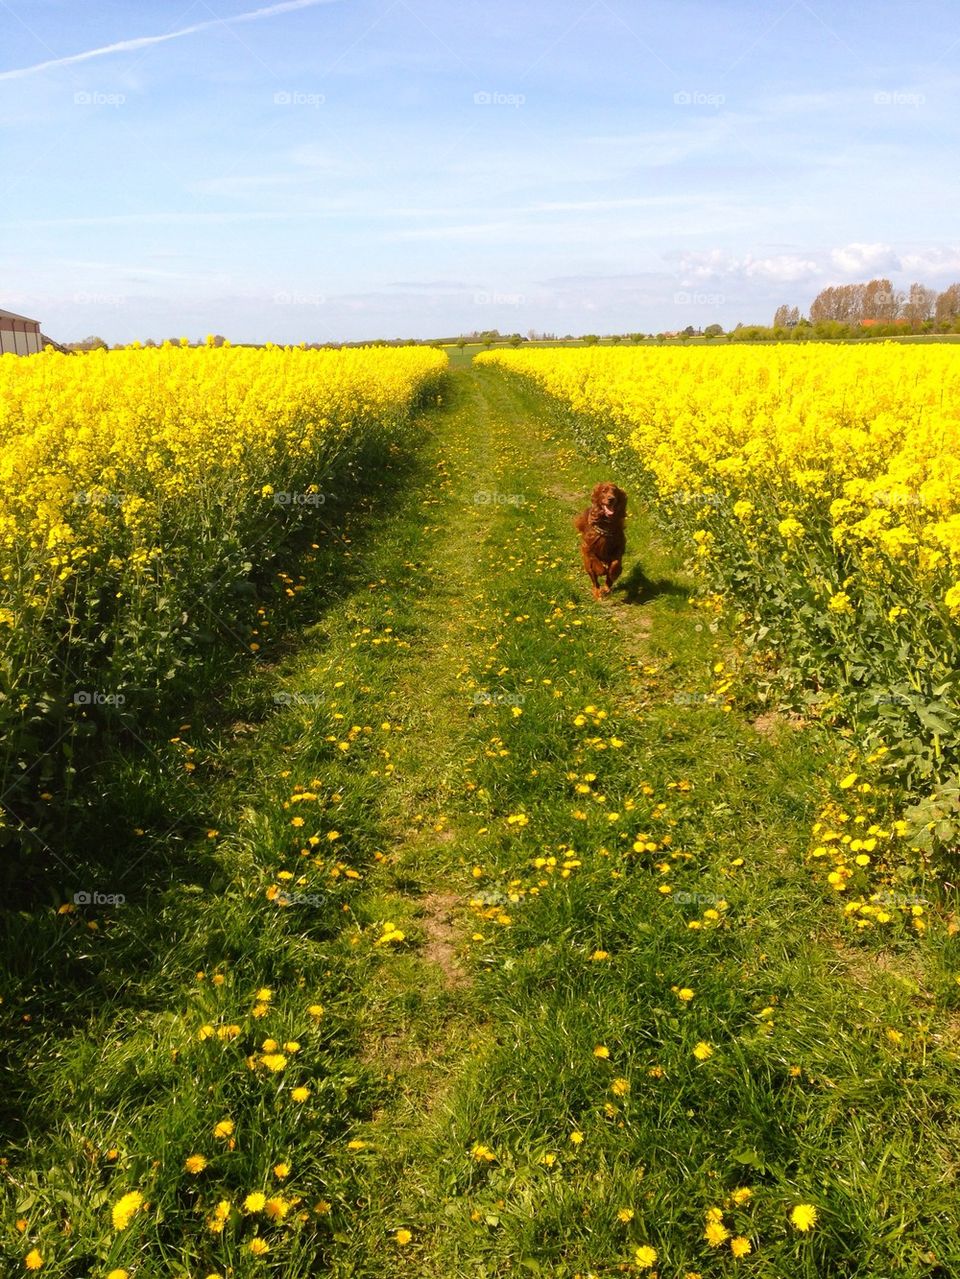 Dog in field